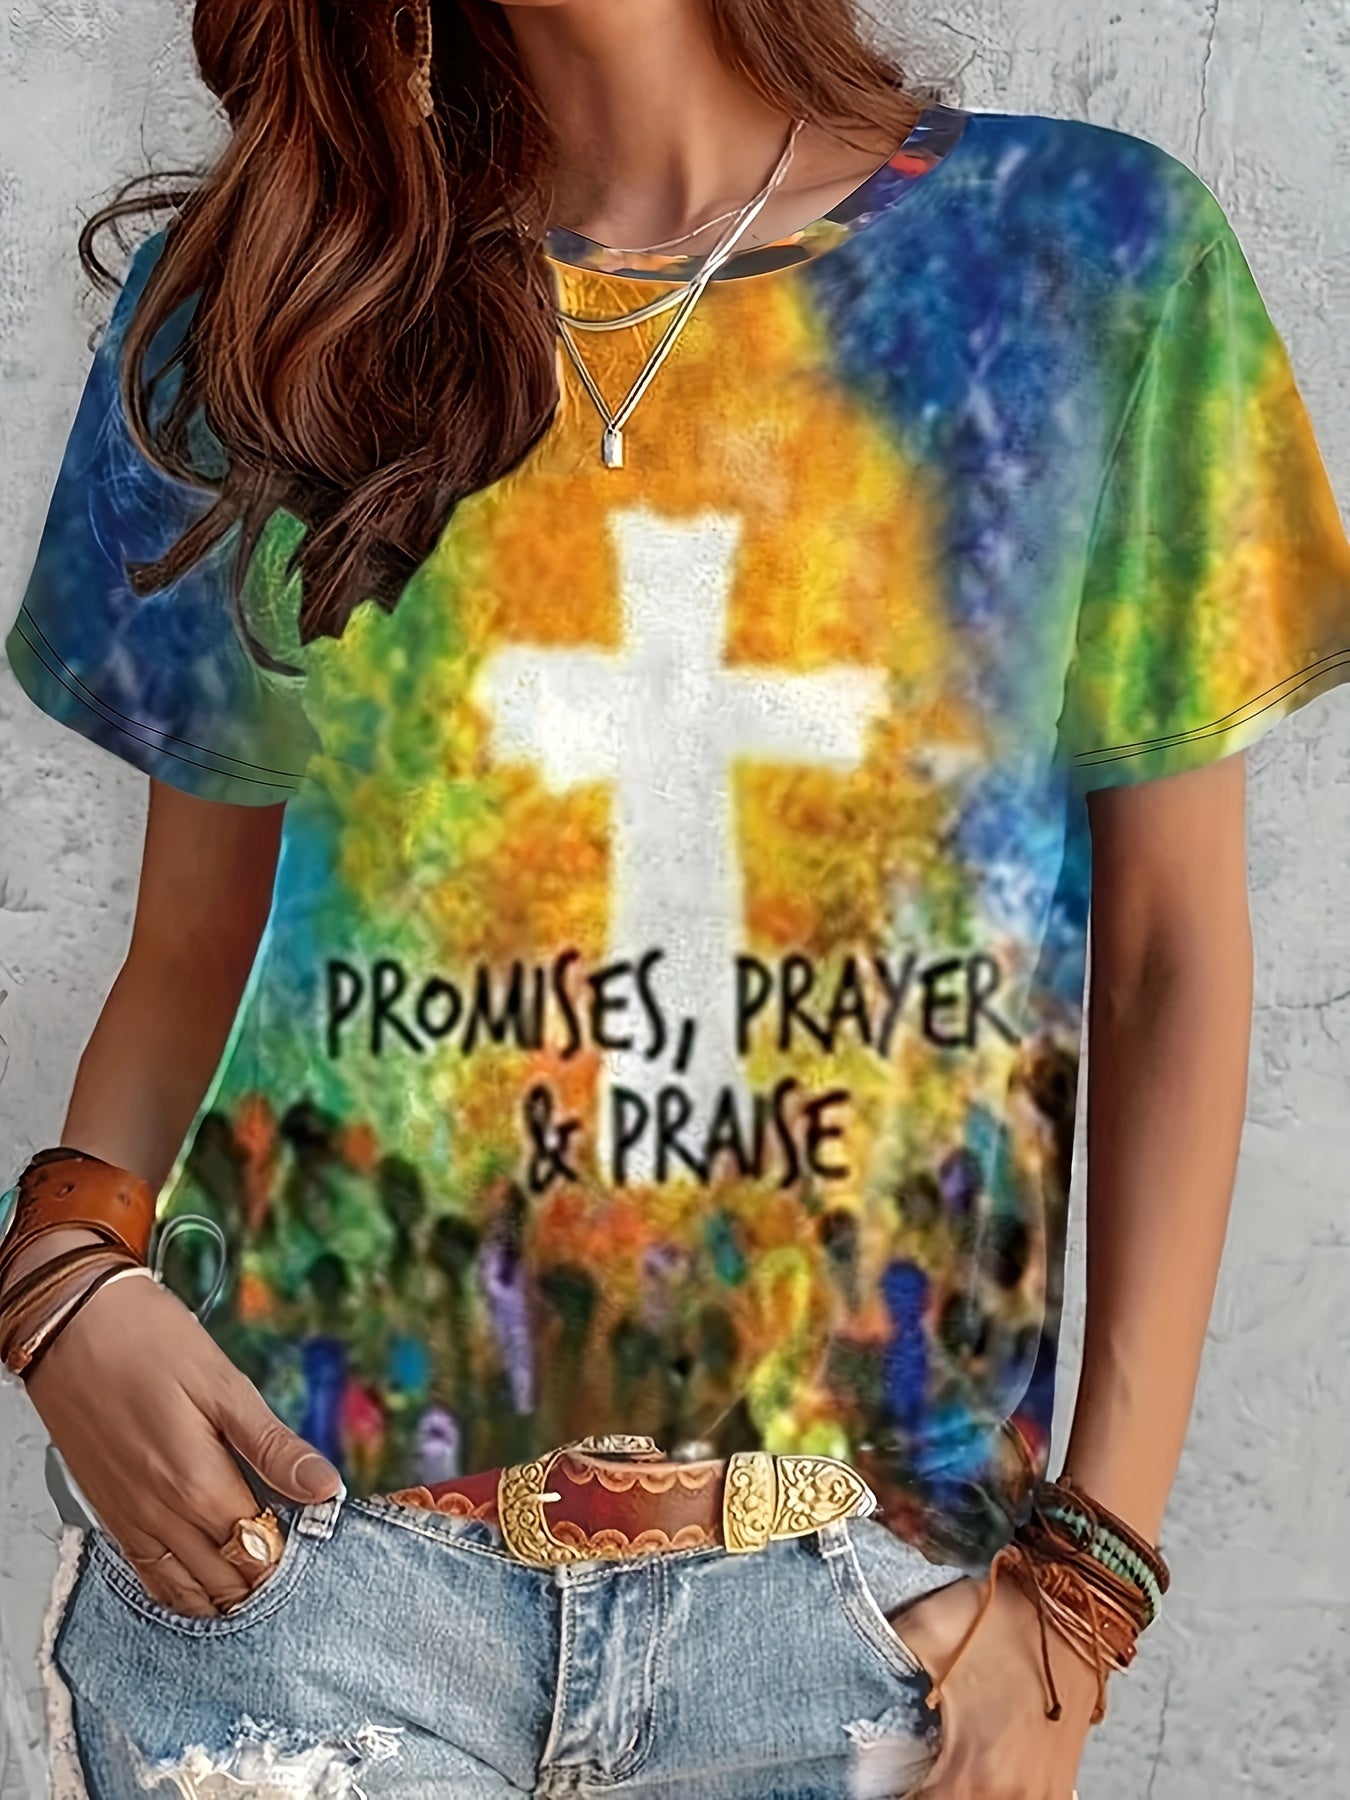 Promises Prayer & Praise Plus Size Women's Christian T-shirt claimedbygoddesigns